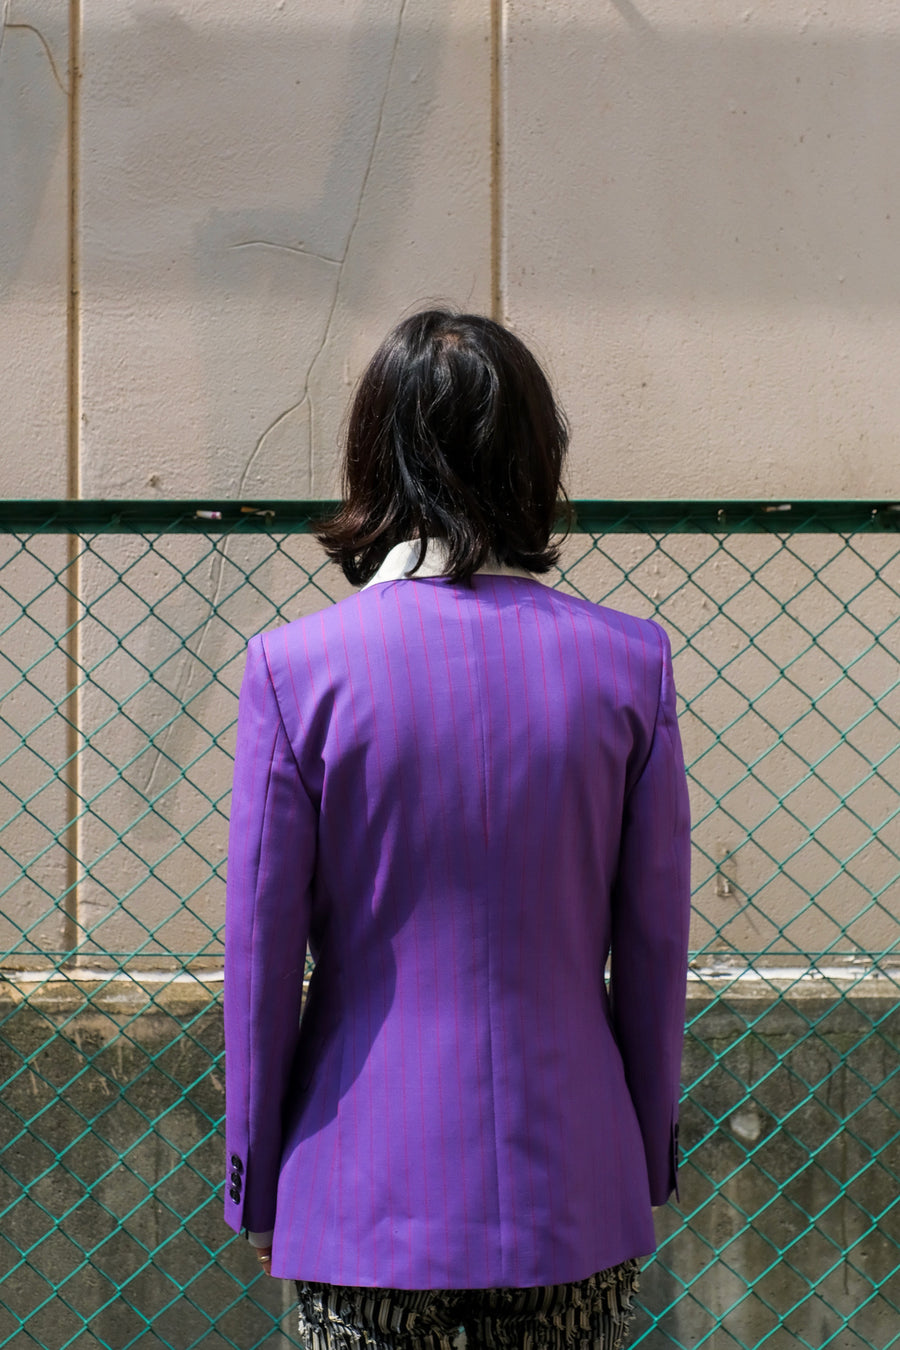 LITTLEBIG  Concaved Shoulder Jacket(Purple)